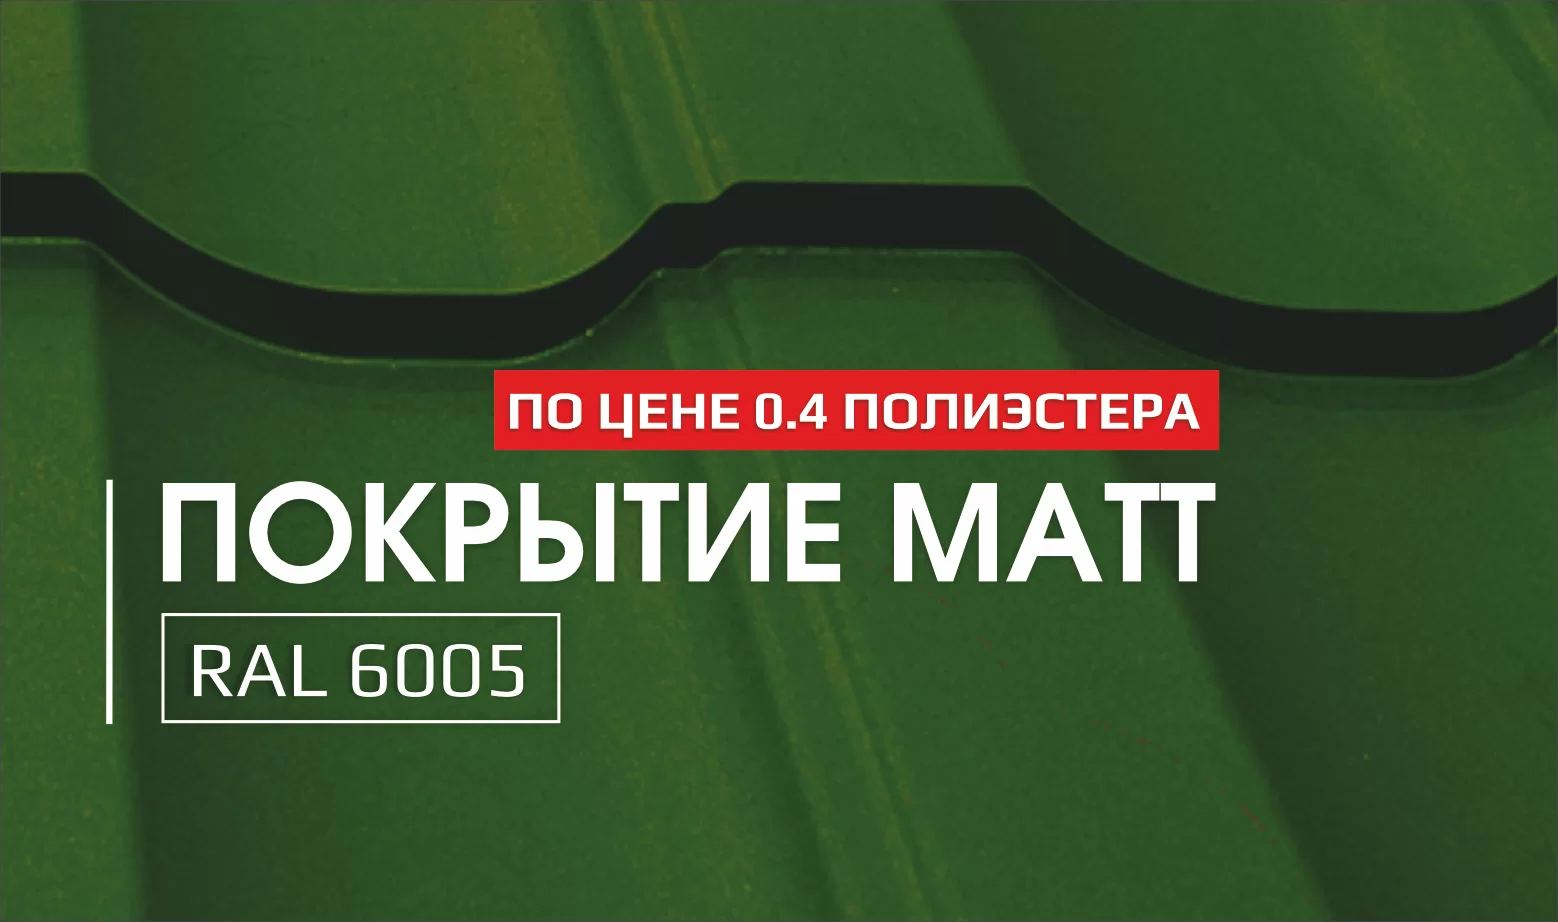 Акция: Покрытие MATT RAL 6005 по цене Полиэстера (Pe) 0.40